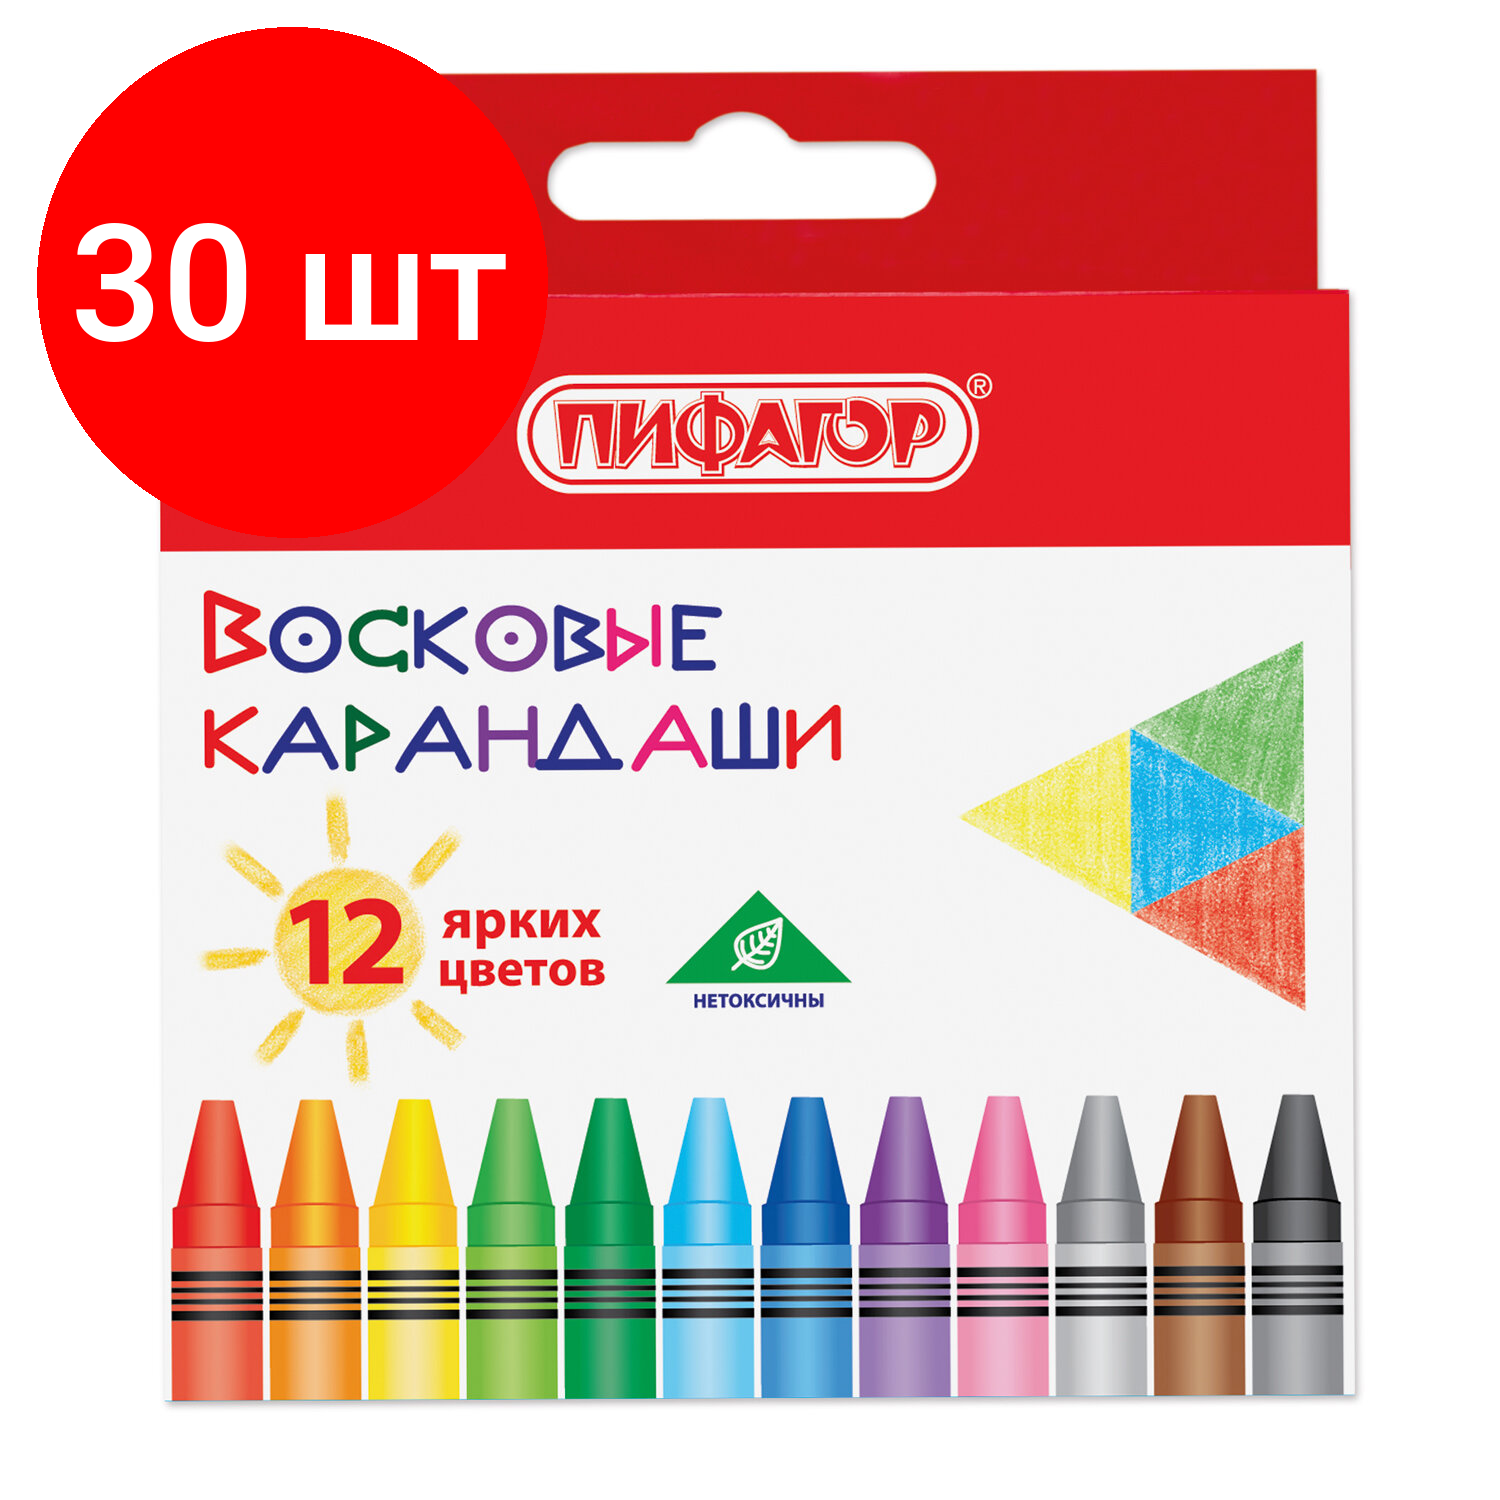 Комплект 30 шт, Восковые карандаши пифагор "солнышко", набор 12 цветов, 227279